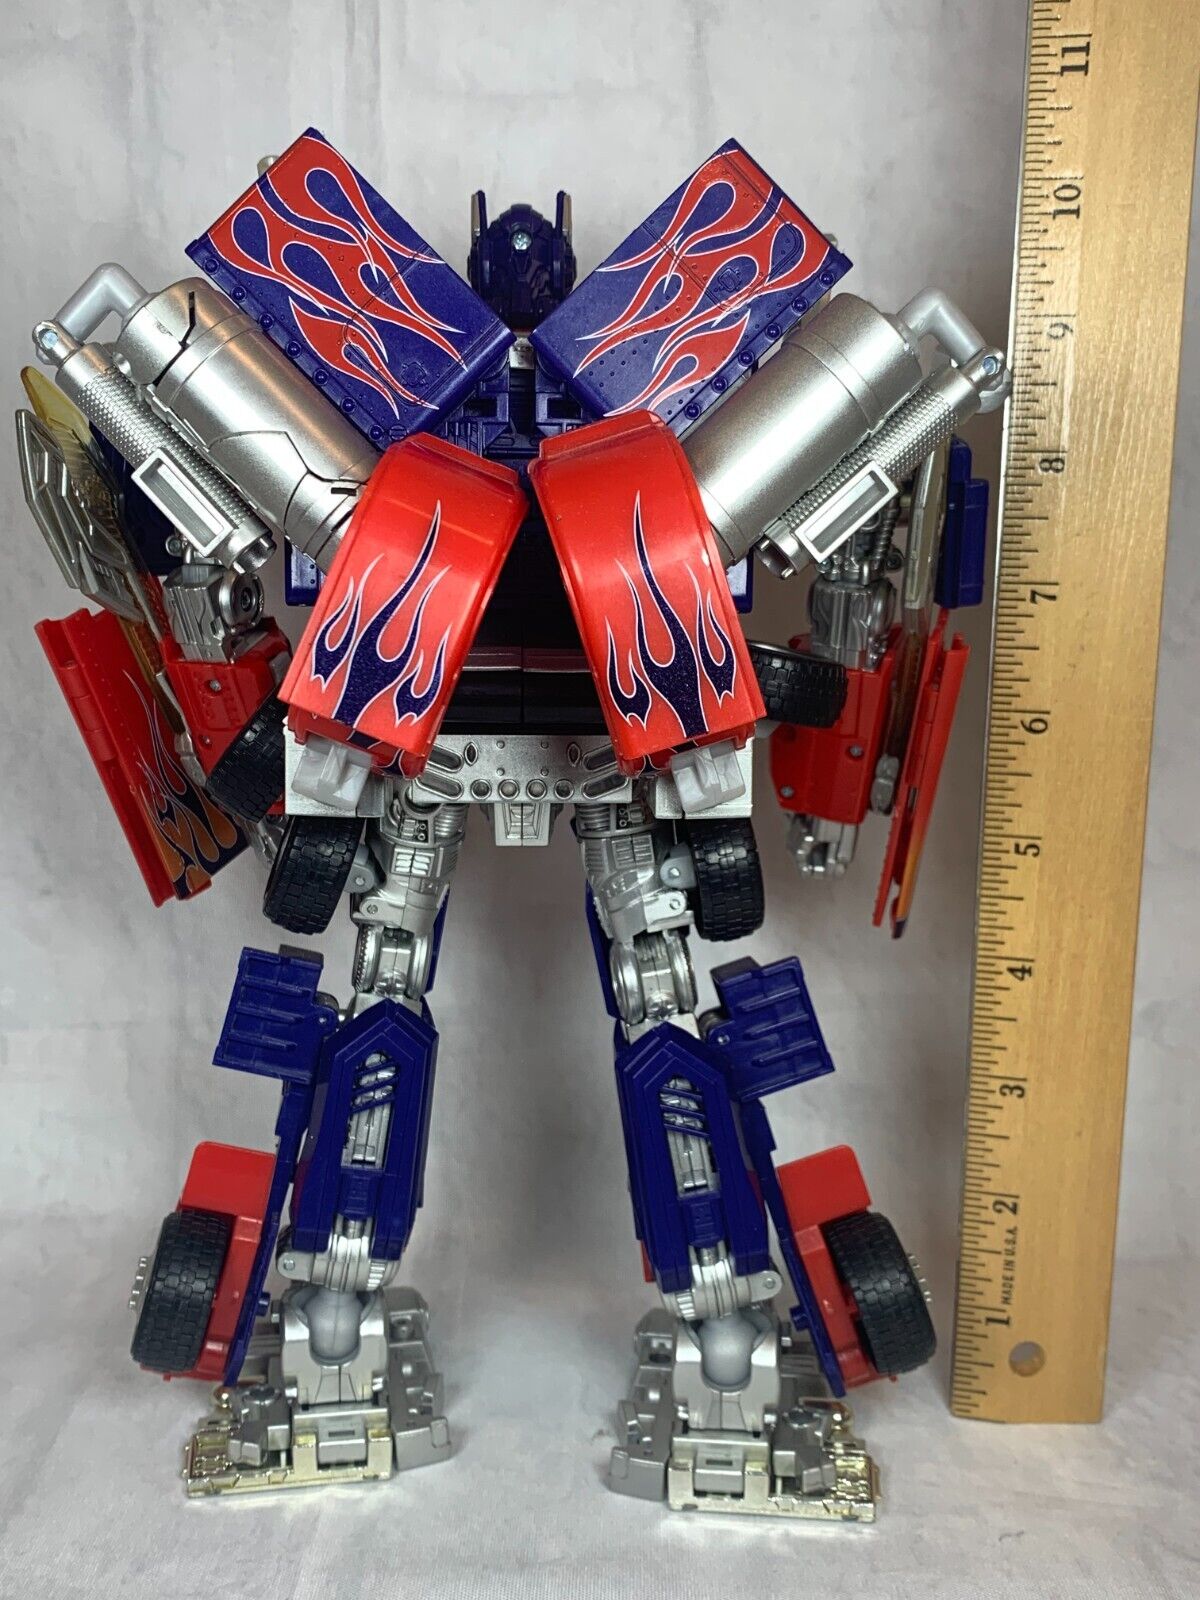 ::Takara Tomy Transformers Revenge of the Fallen RA-24 Buster Optimus Prime